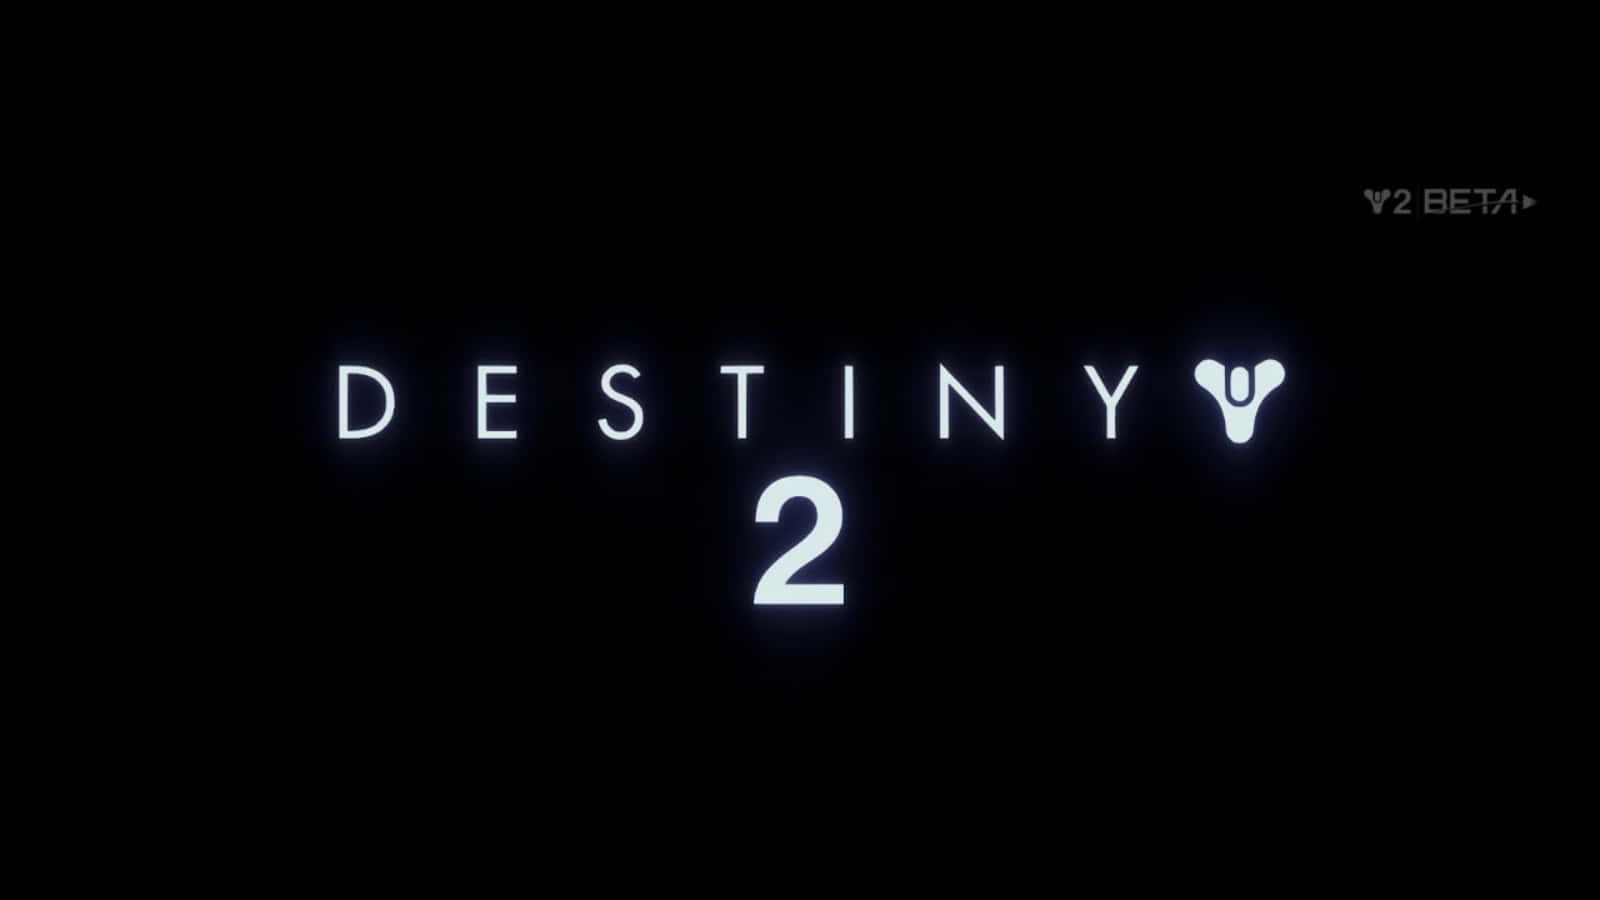 Det officielle logo til den højt forventede videospil, Destiny 2, inkluderet i baggrundsbilledet. Wallpaper